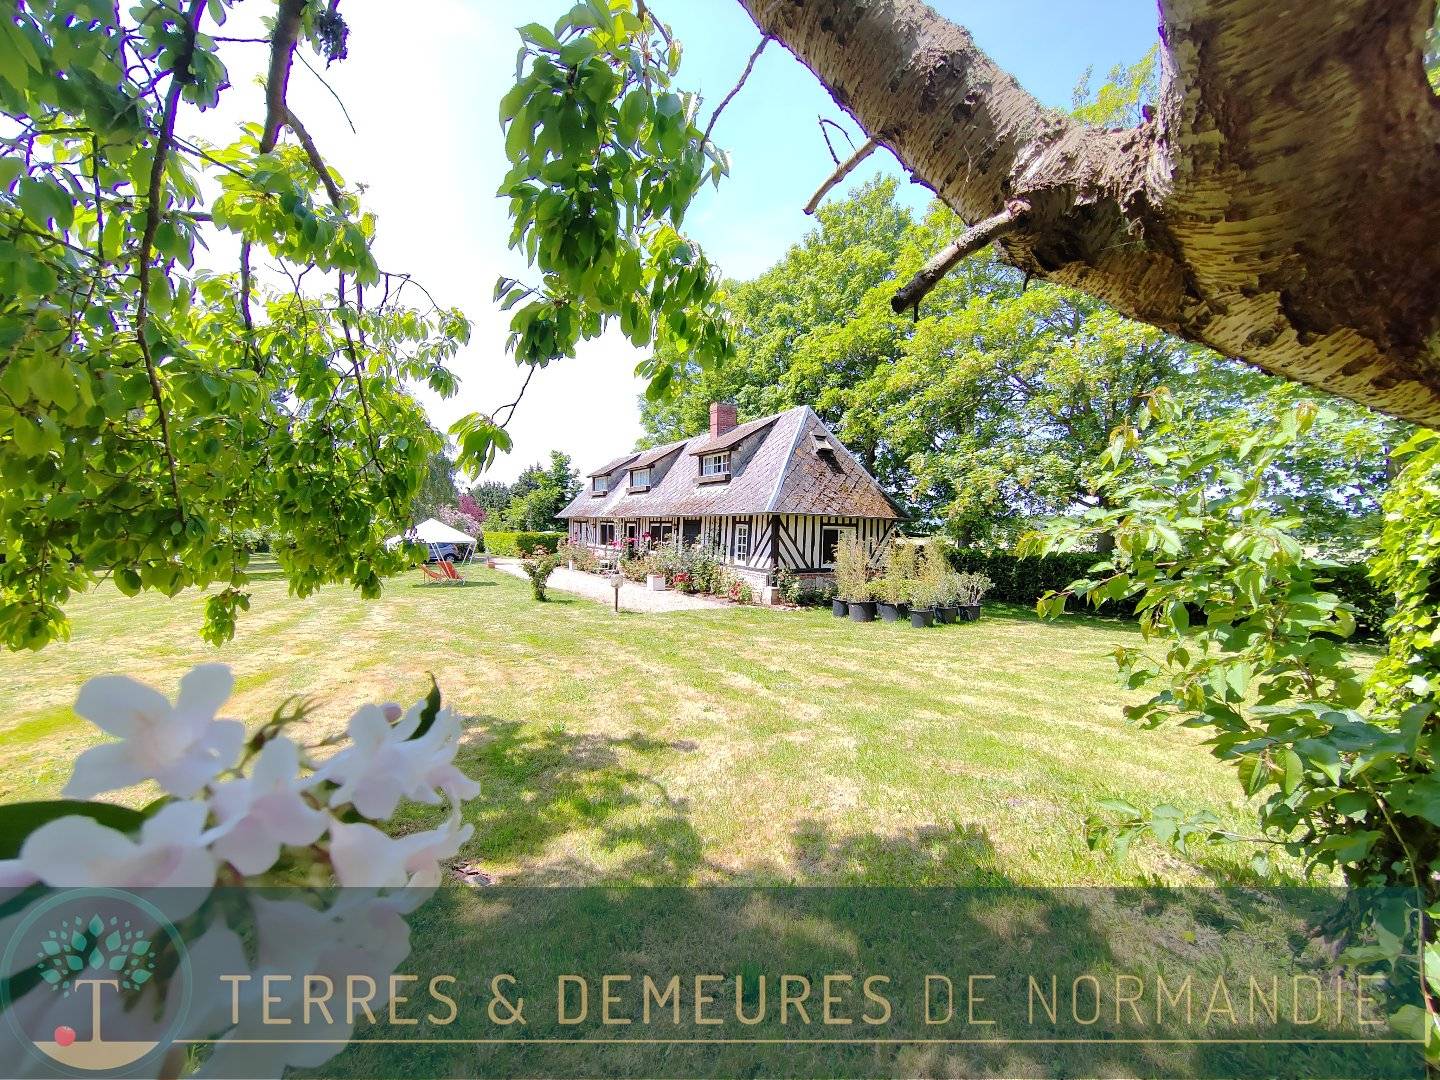 Vallée de Seine, village typique normand, propriété de caractère, au calme, jardin arboré.